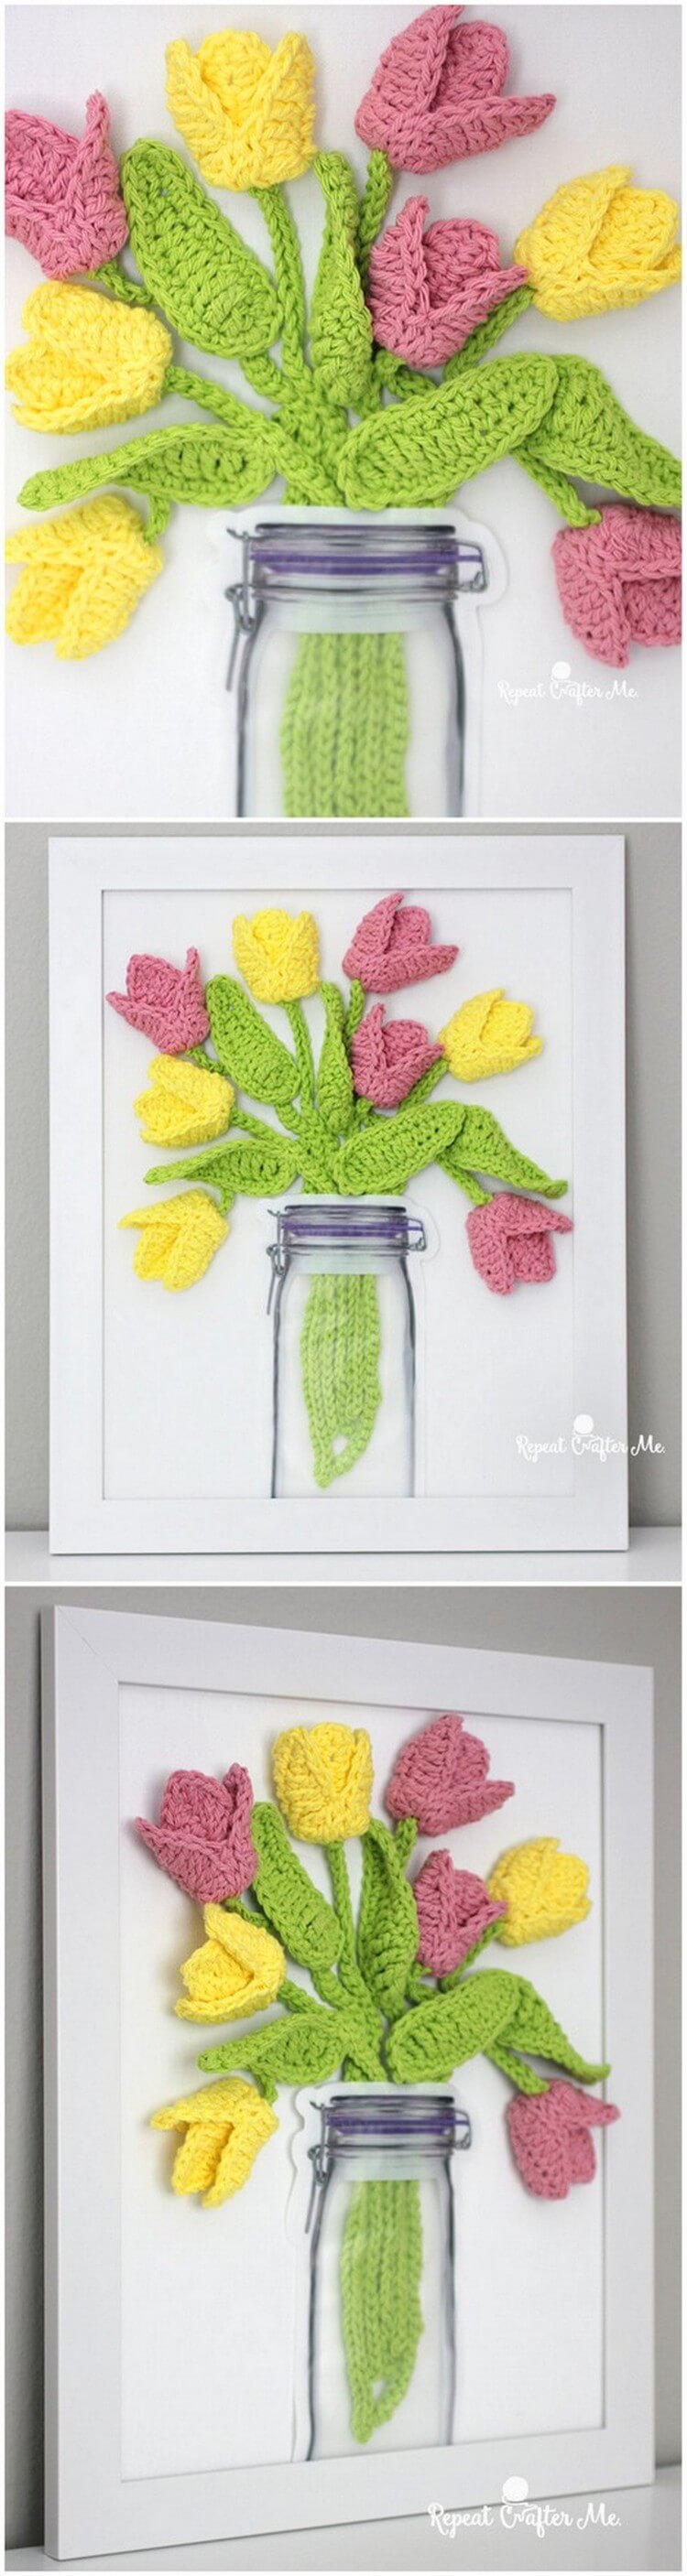 Crochet Flower Pattern (37)